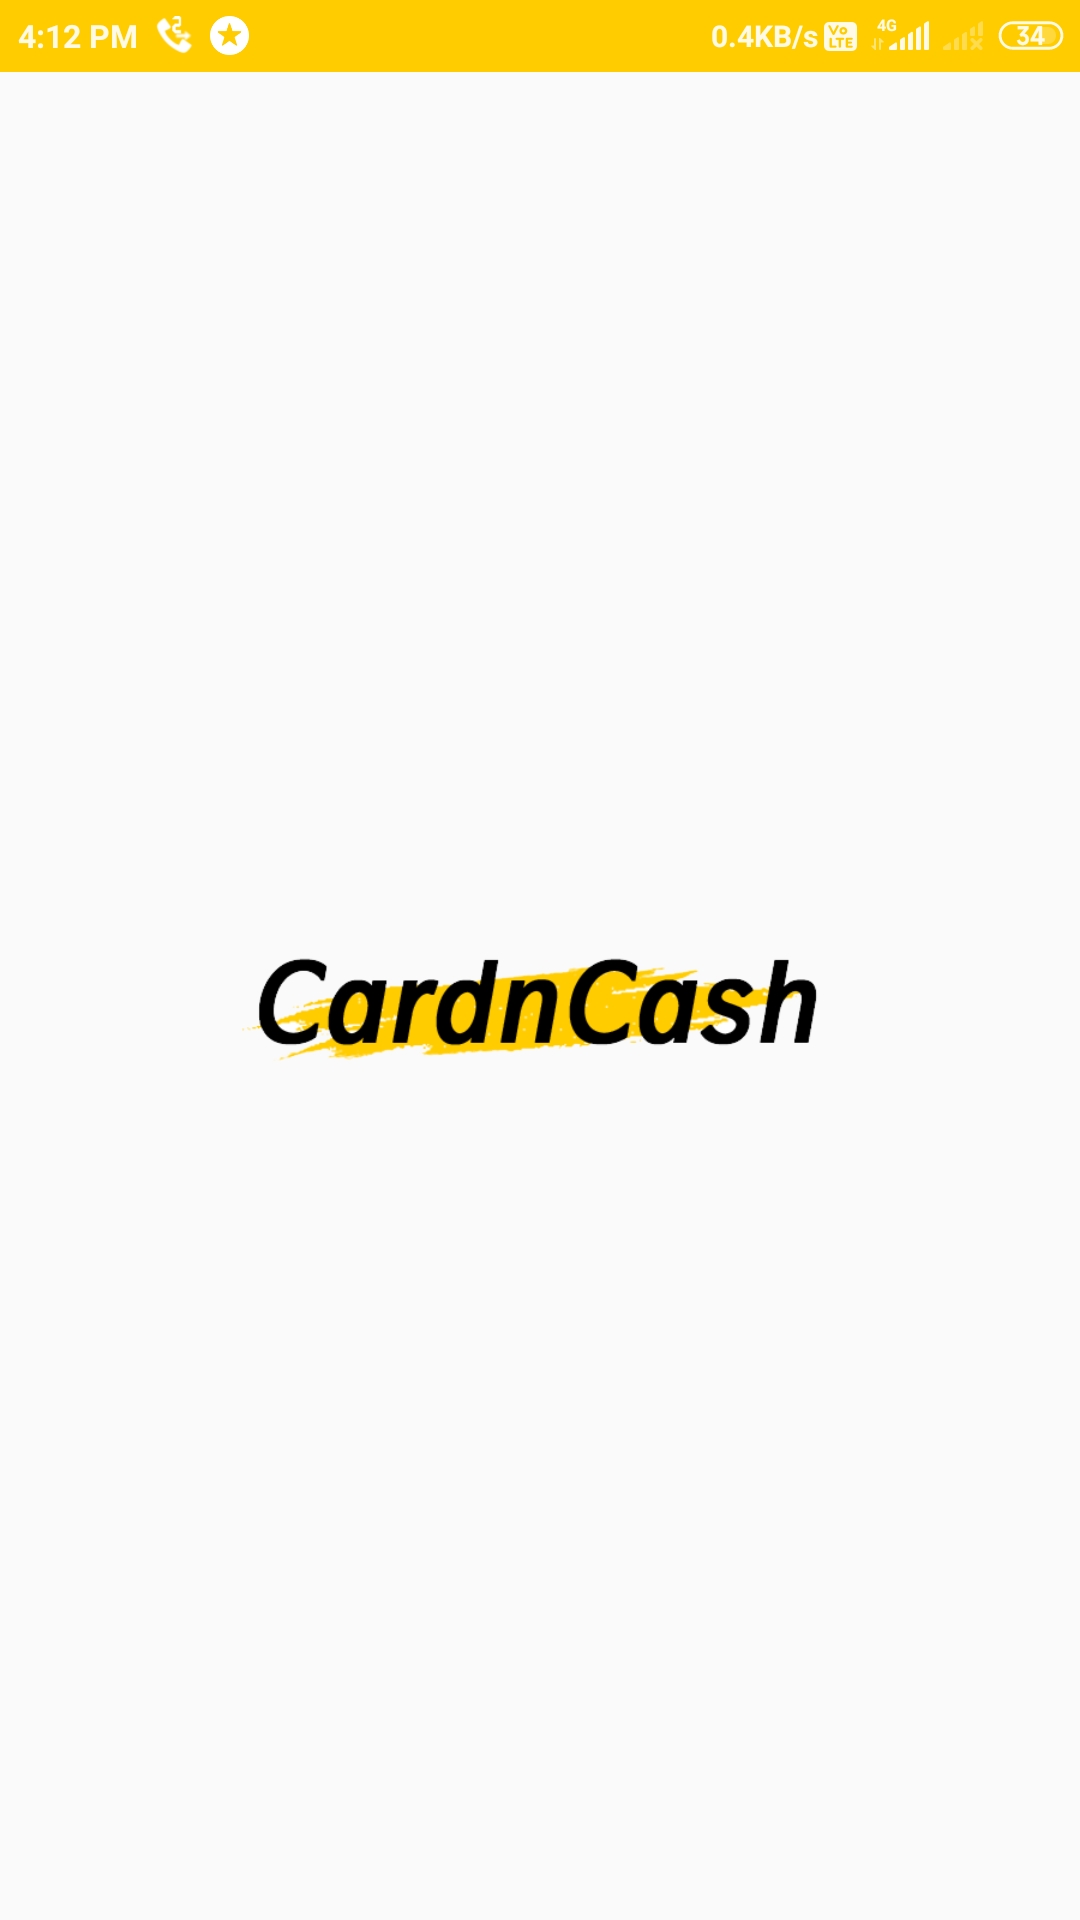 CardnCash